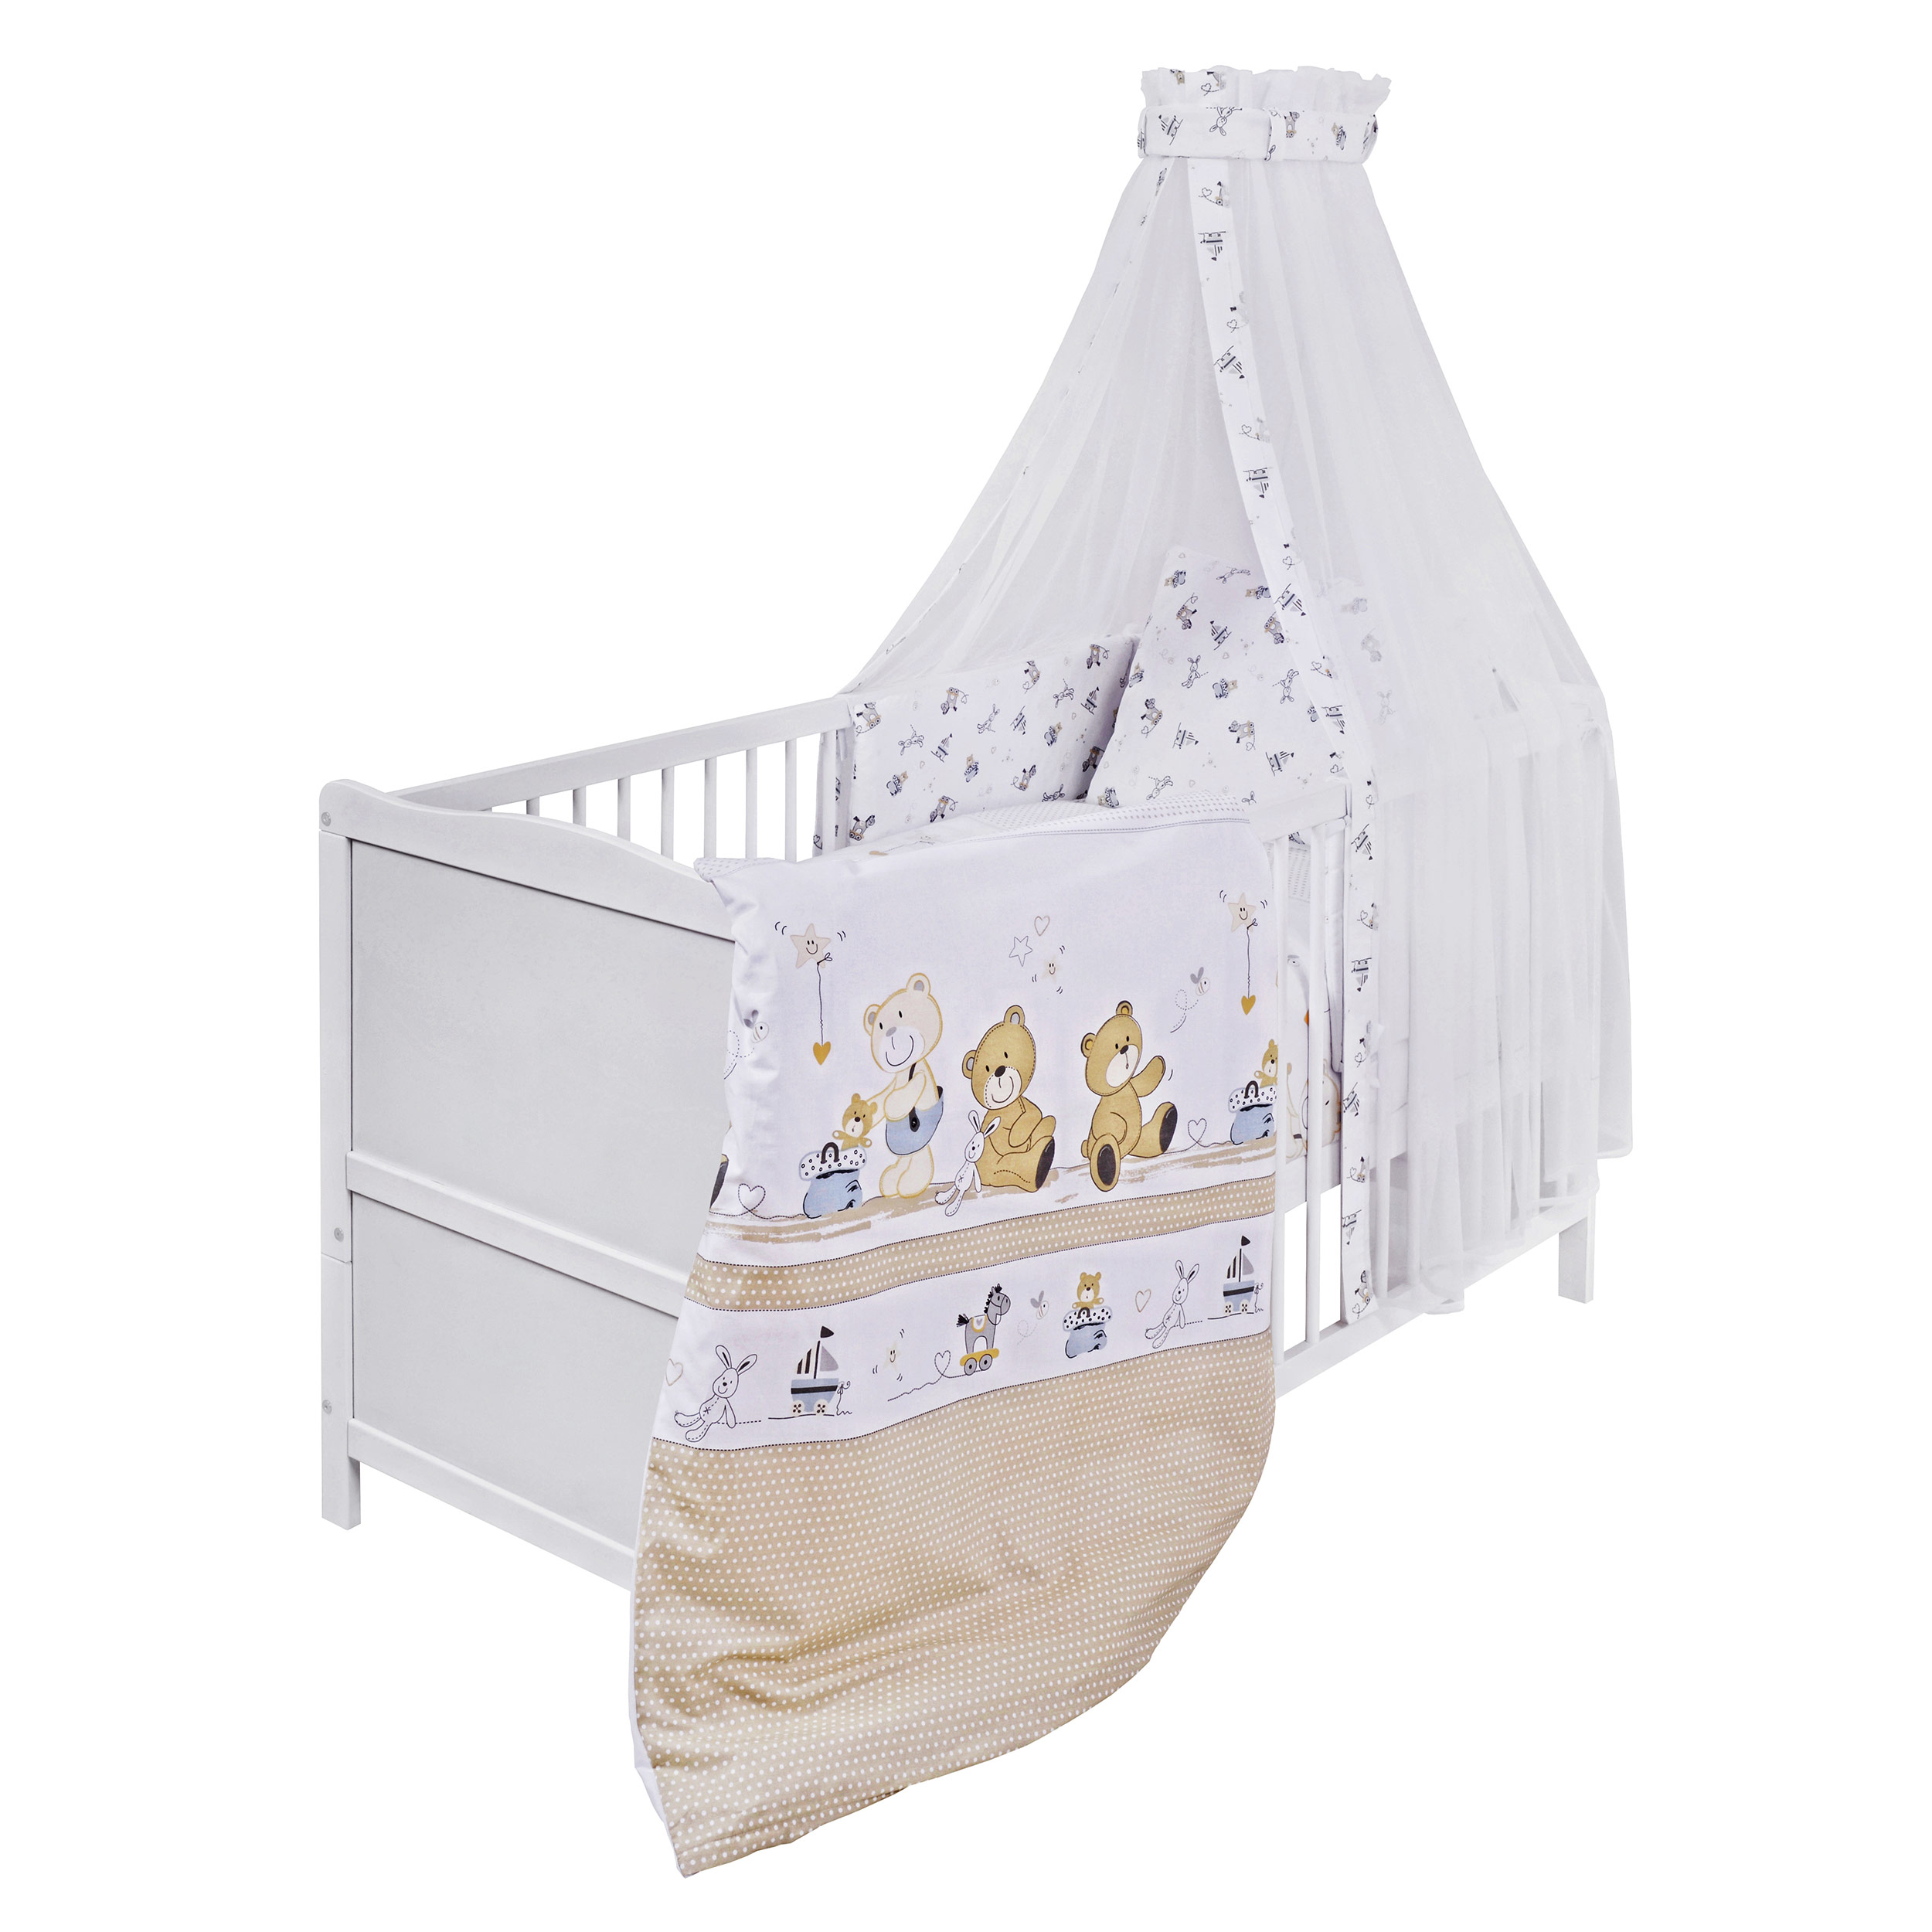 Babyzimmer Babybett Kinderbett Teddybär Wickelkommode Weiß Bettset komplett 